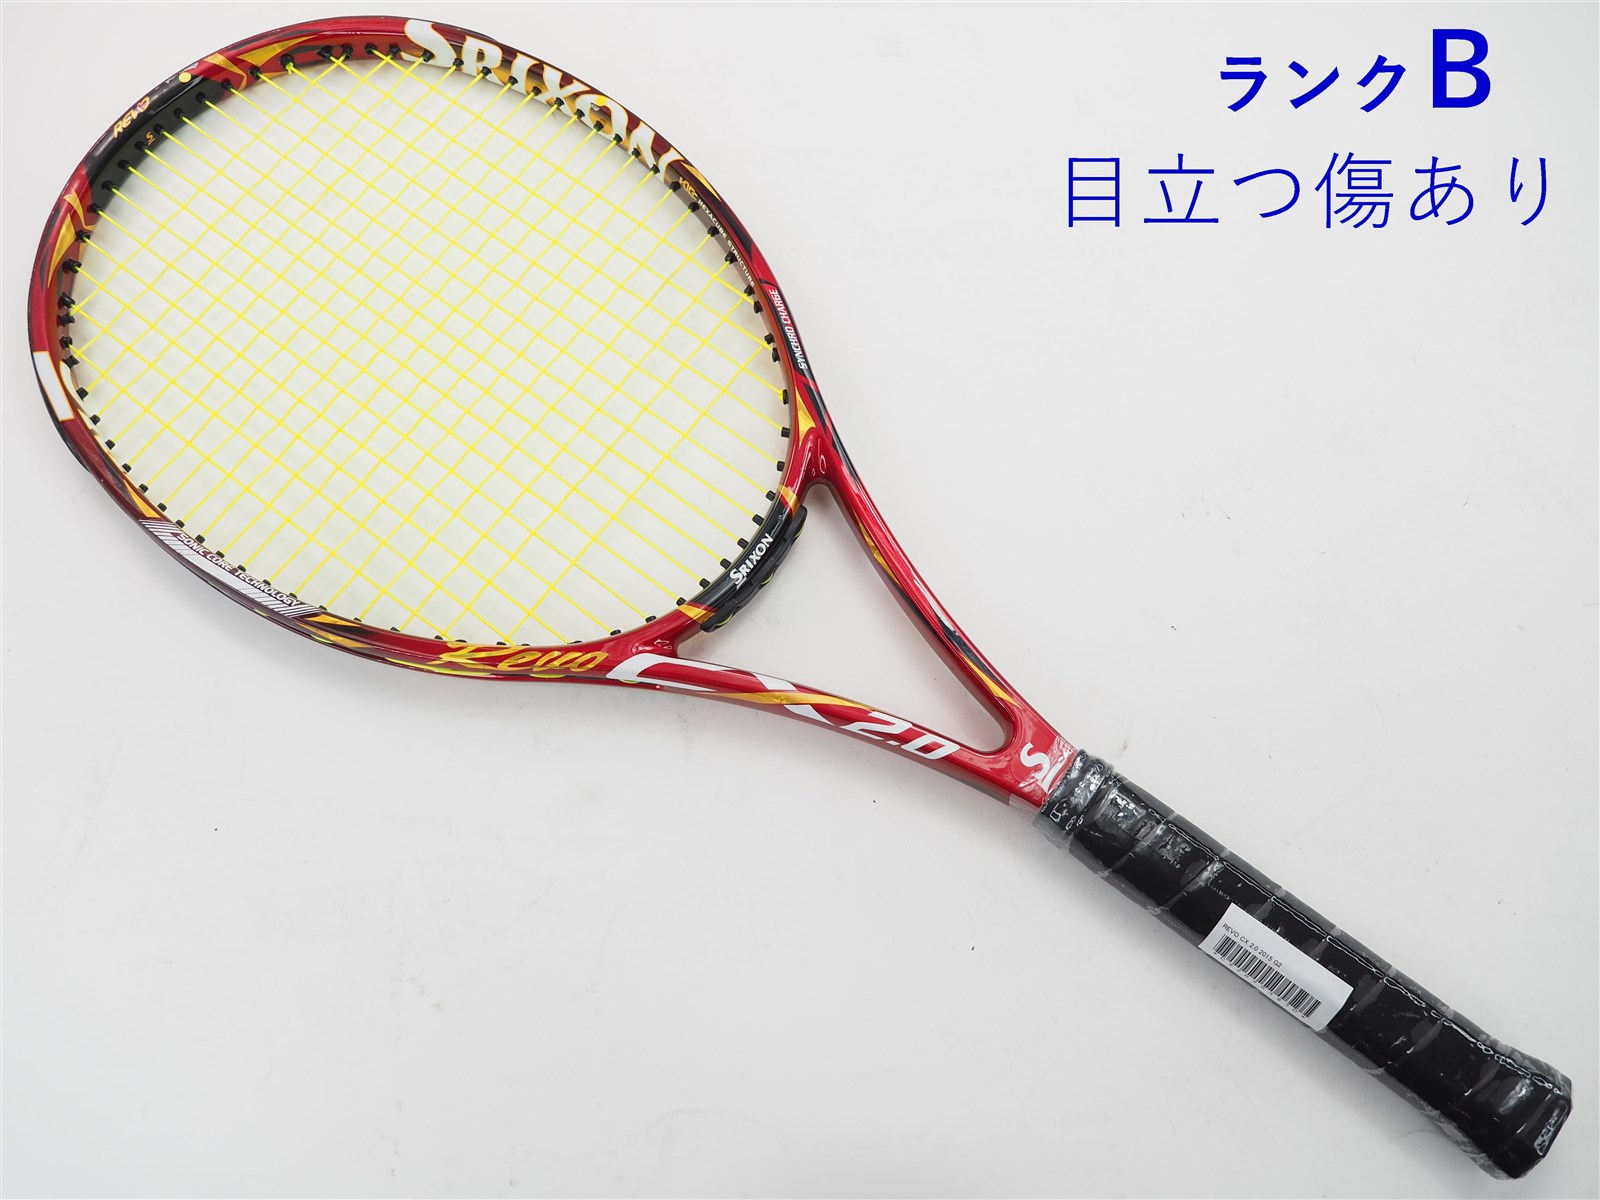 【中古】スリクソン レヴォ シーエックス 2.0 2015年モデルSRIXON REVO CX 2.0 2015(G2)【中古  テニスラケット】【送料無料】